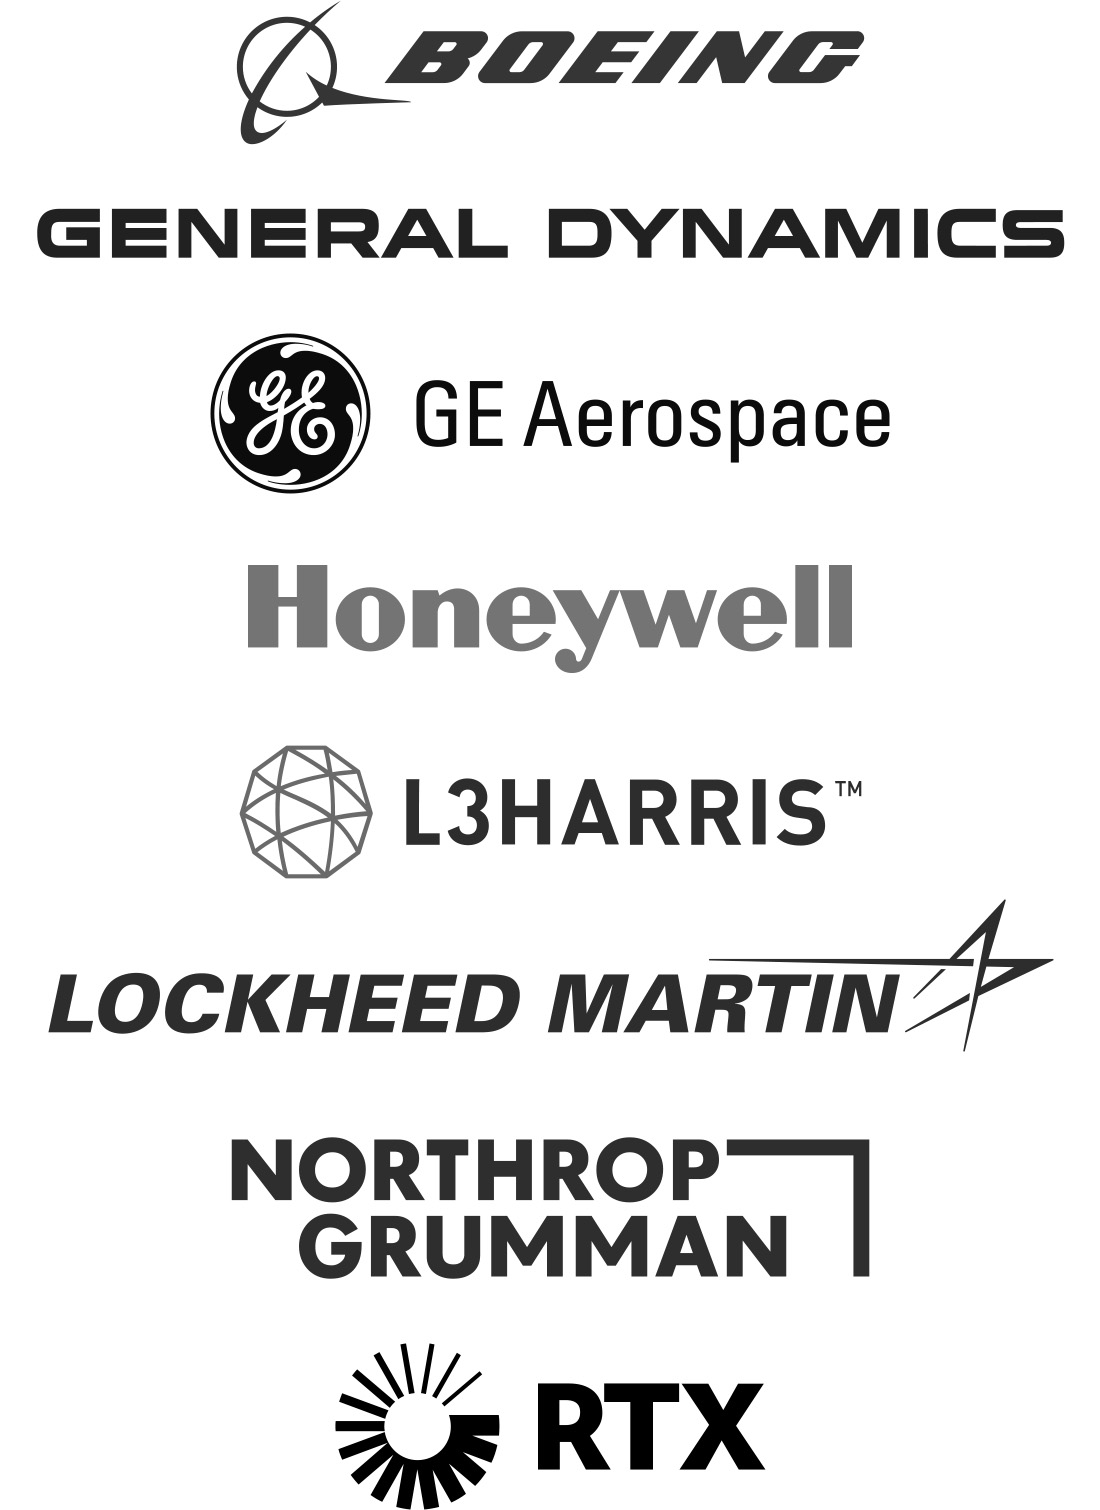 Major U.S. arms manufacturers